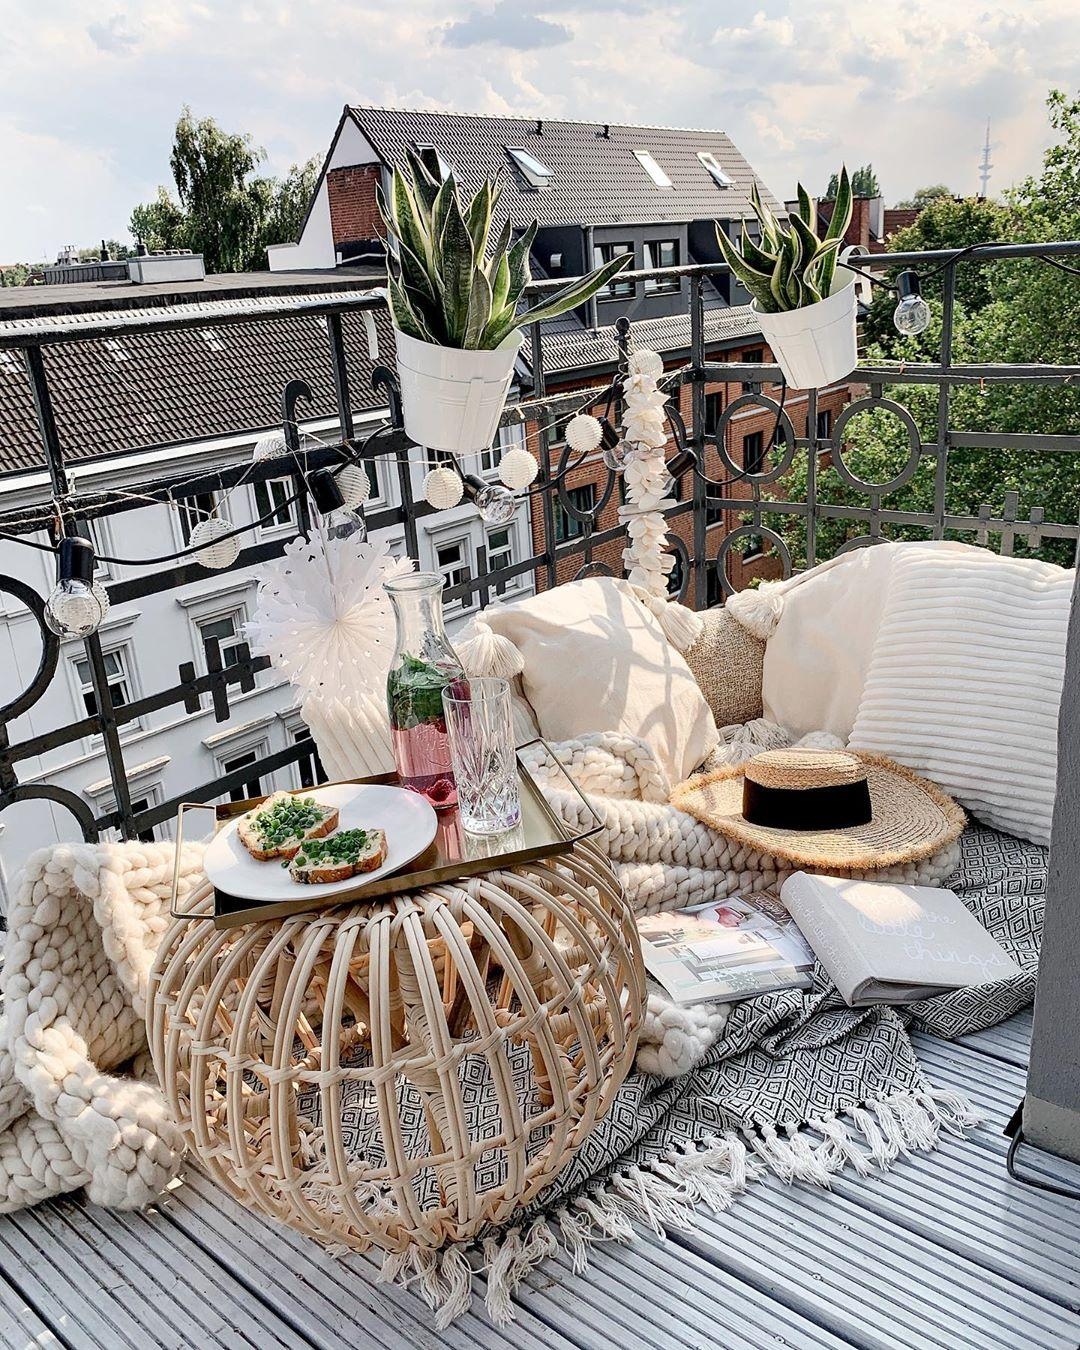 #Picknick auf dem #Balkon? Why not! #gemütlich #cozy #white #altbau #altbauliebe #depotdeko #bohostyle #frühstück #hygge